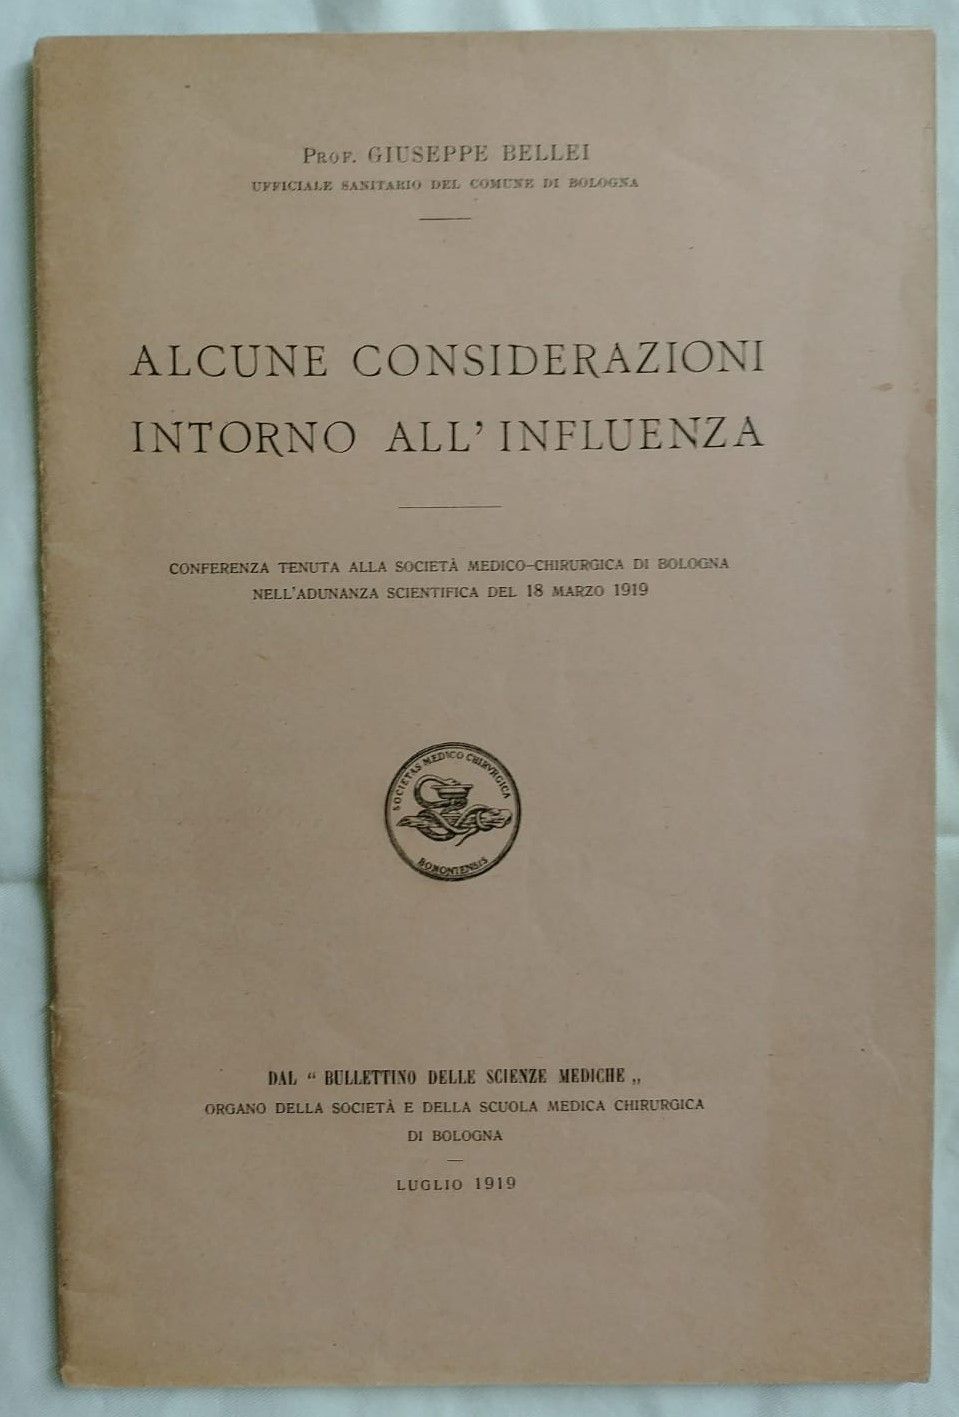 Il mistero dell’influenza detta “Spagnola” in due rari opuscoli del 1919